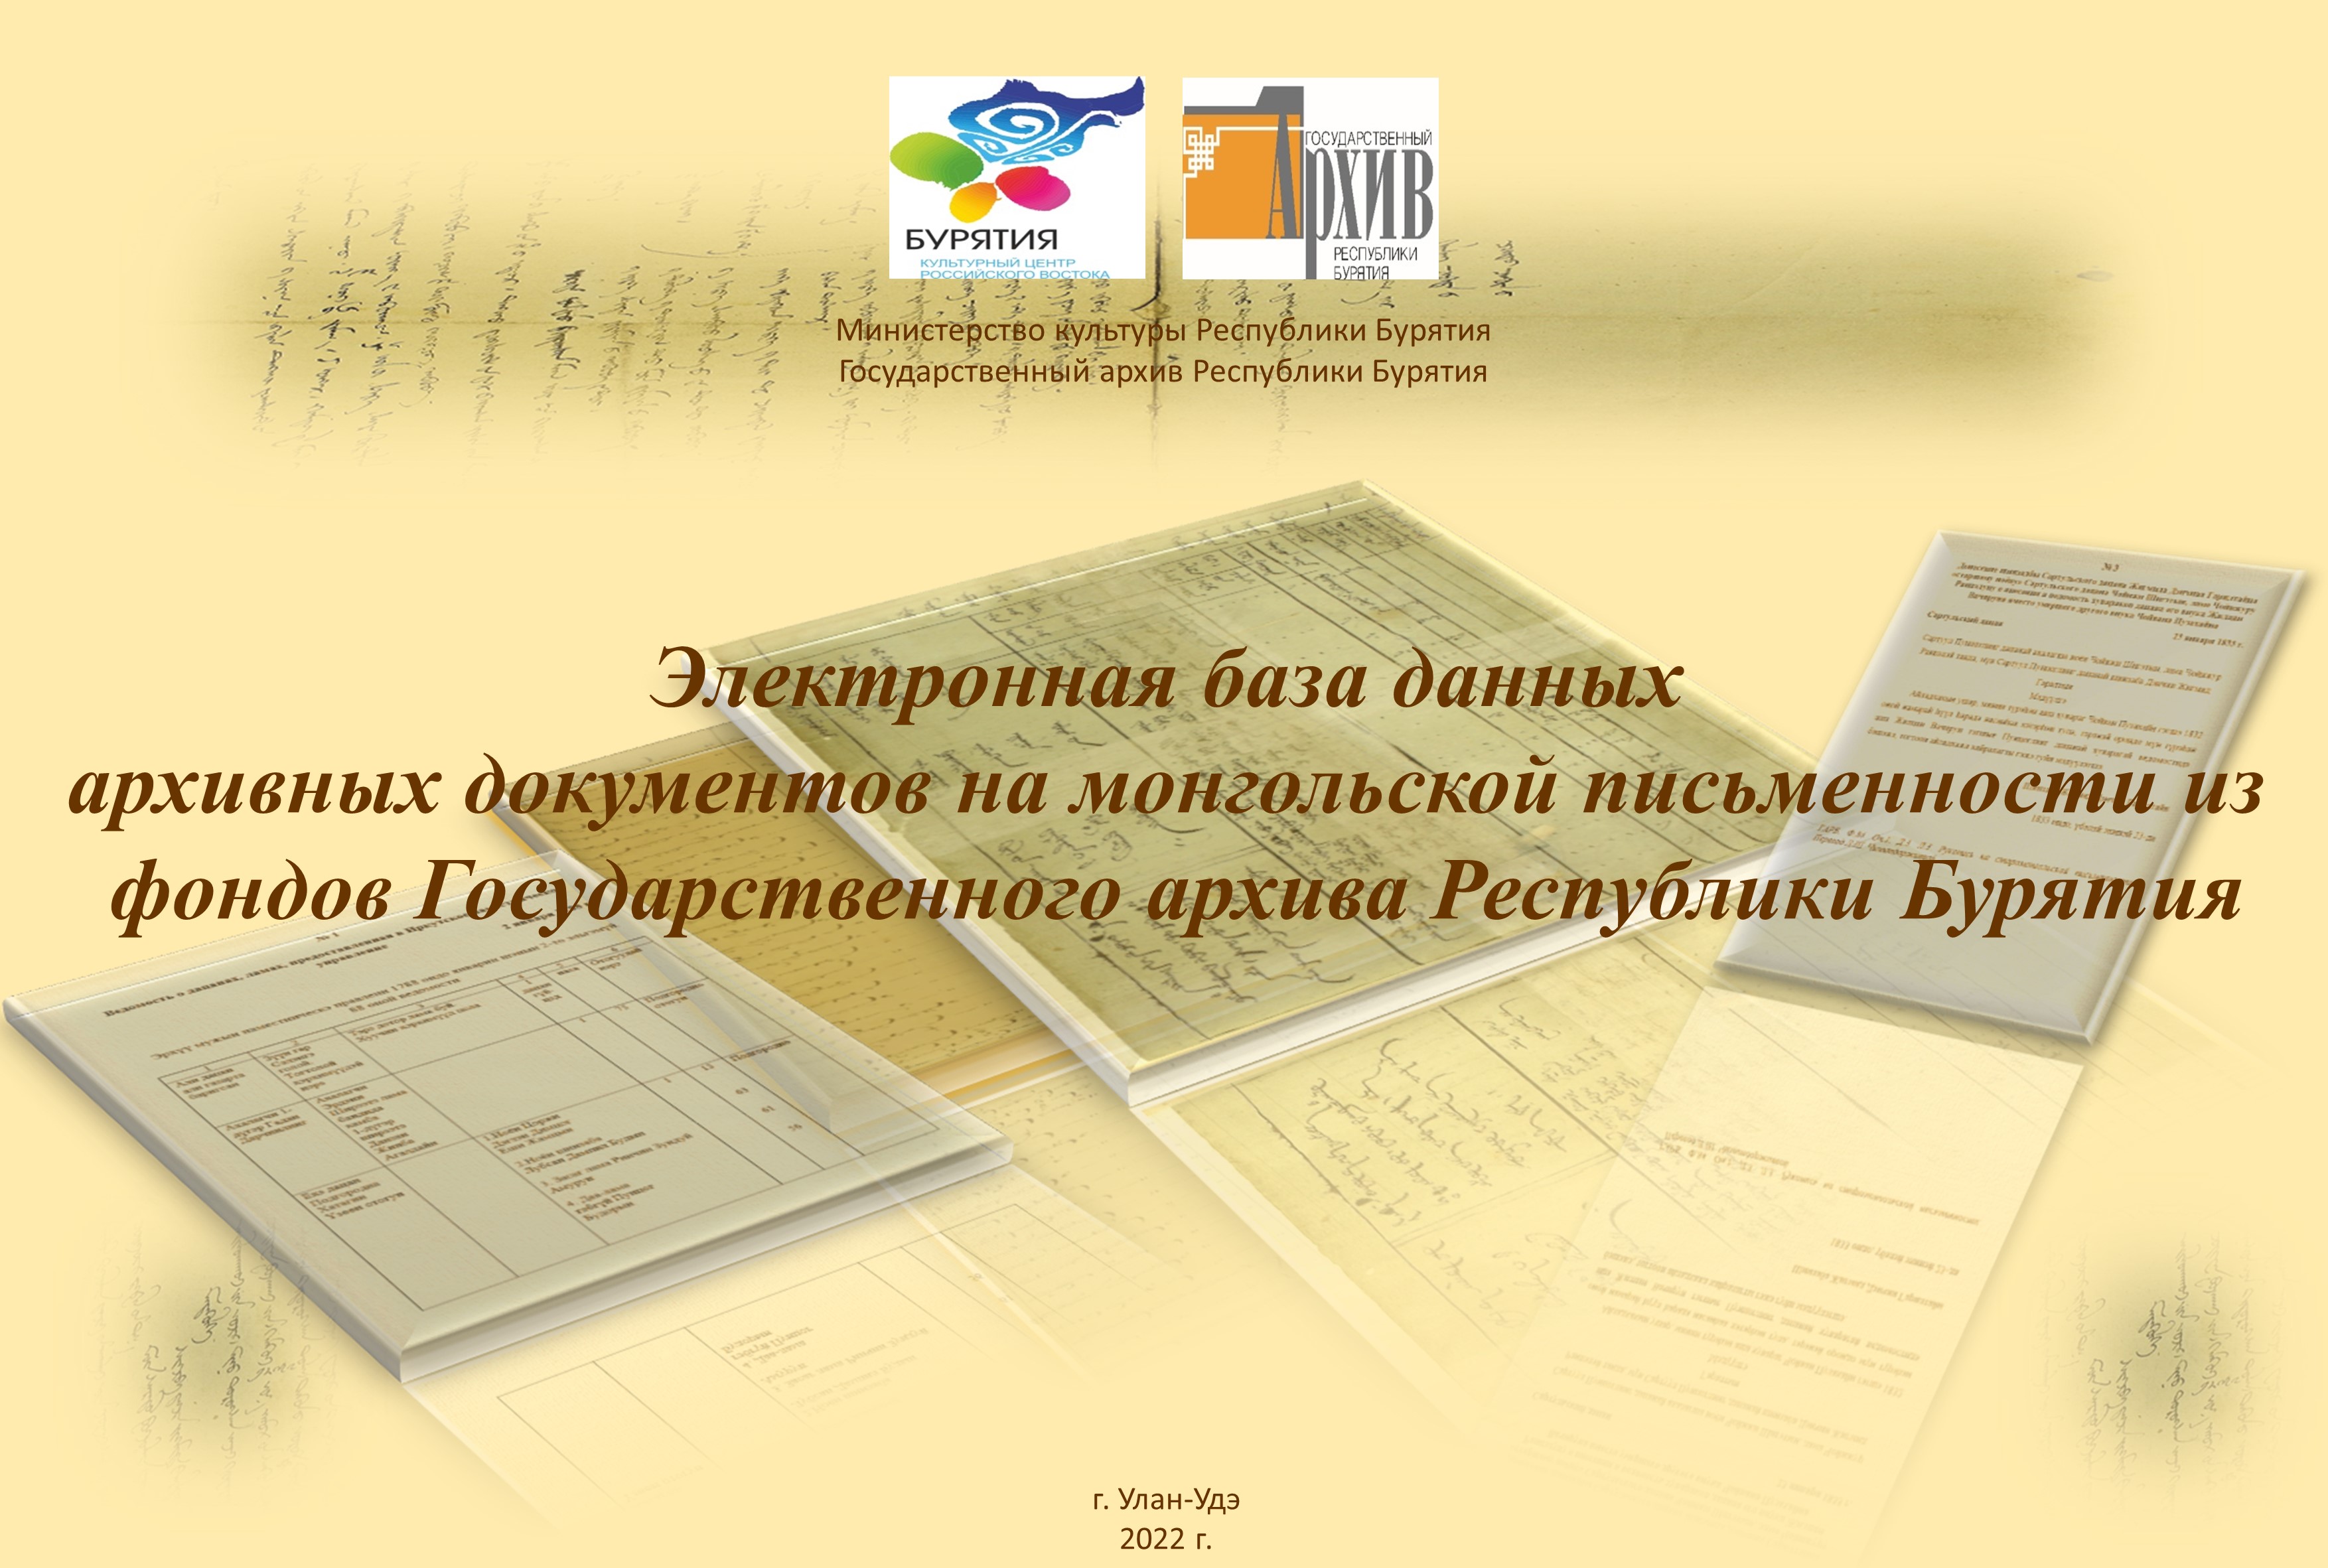 Завершены работы по переводу архивных документов  на монгольской письменности